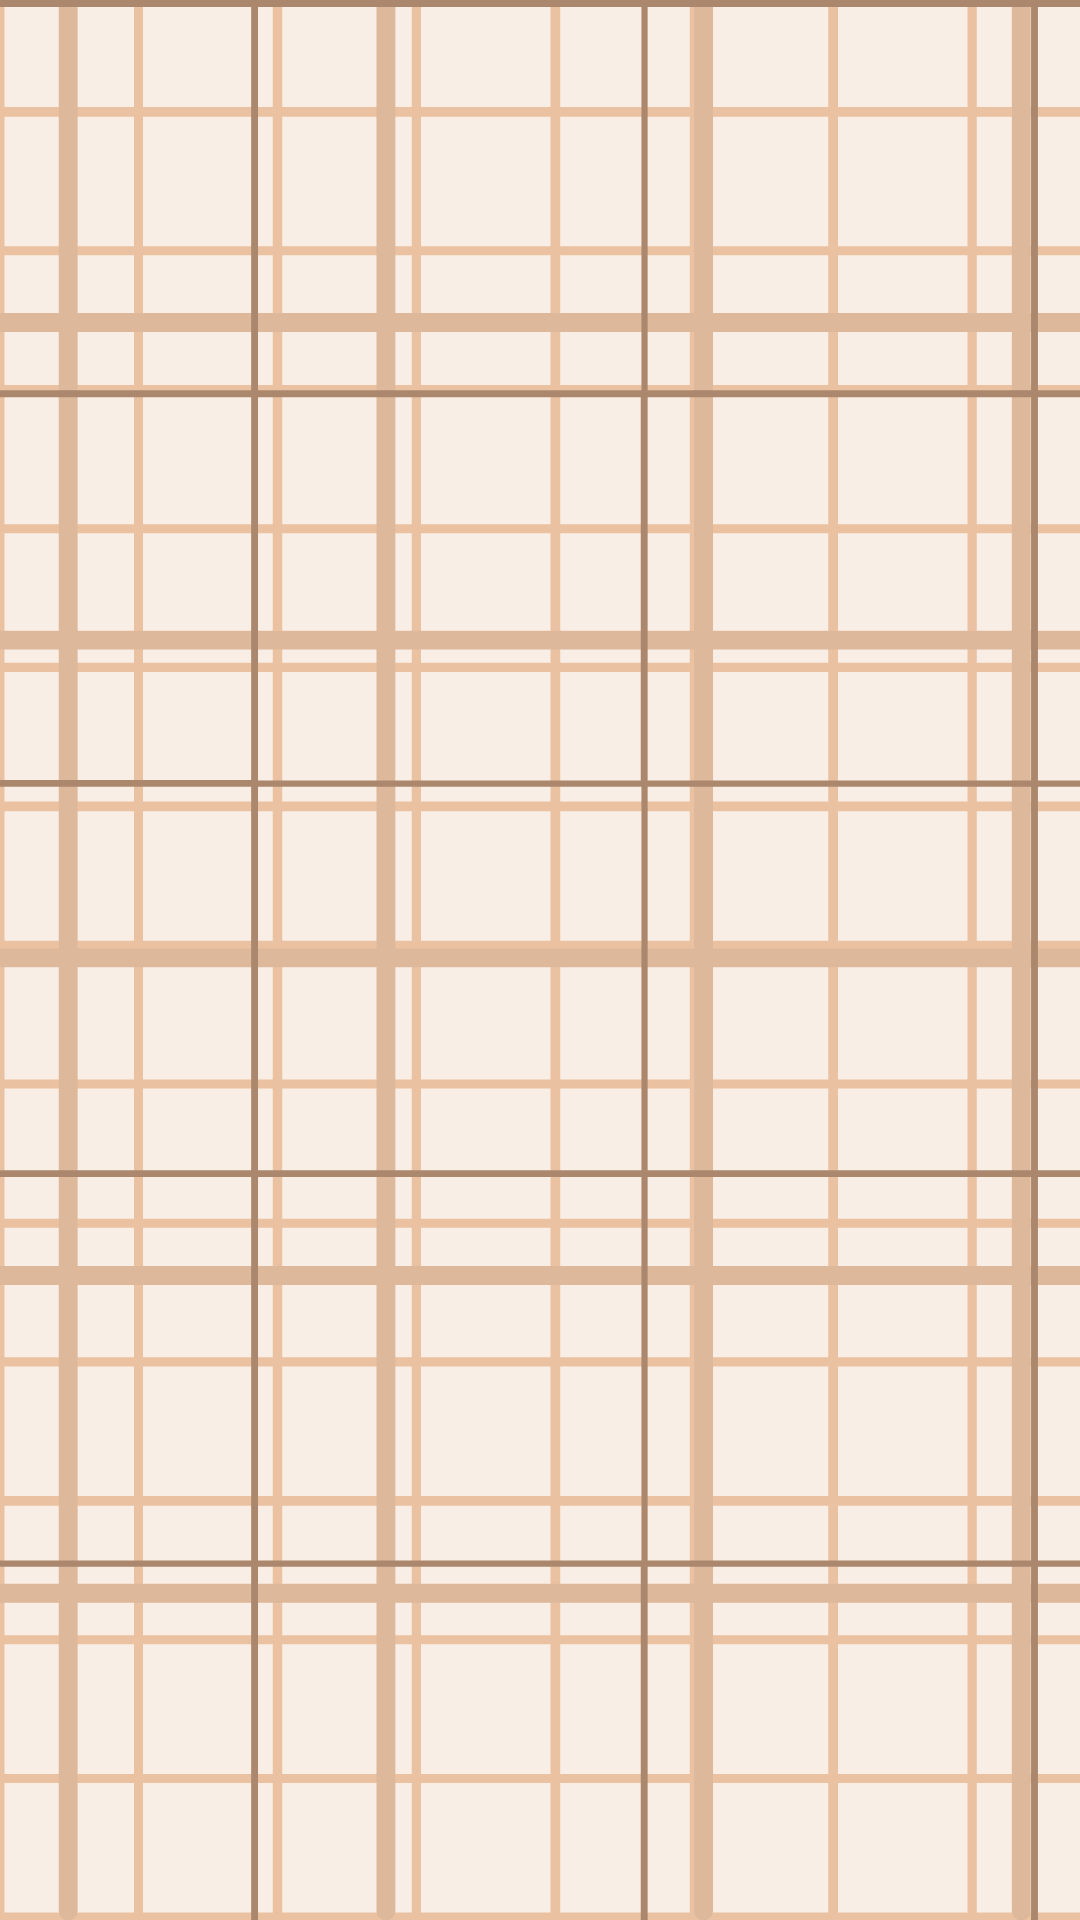 Aesthetic grid wallpaper. Grid wallpaper, Abstract wallpaper design, Beige background beige background aesthetic